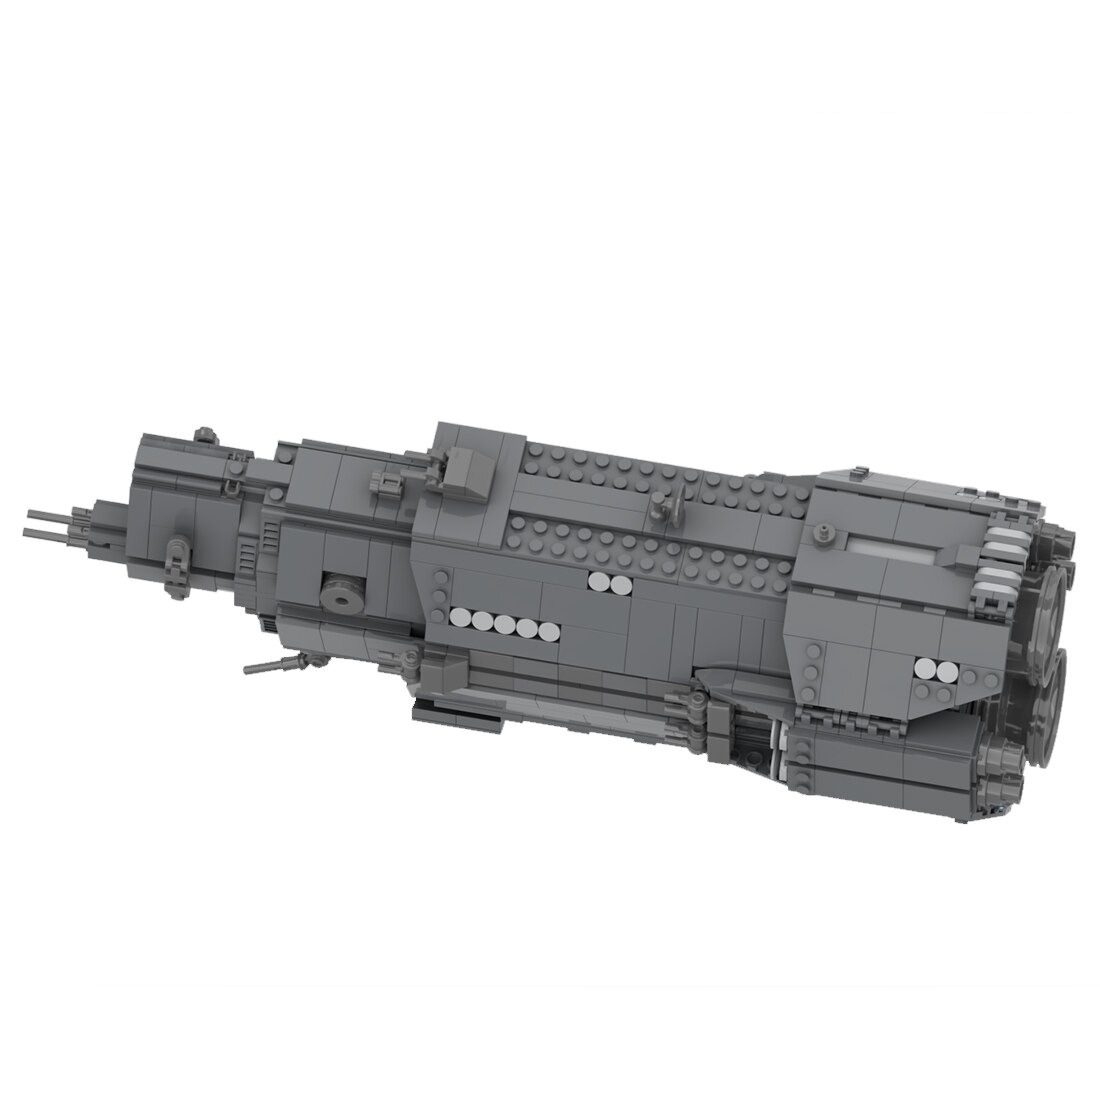 authorized moc 38471 light cruiser model main 4 - KAZI Block